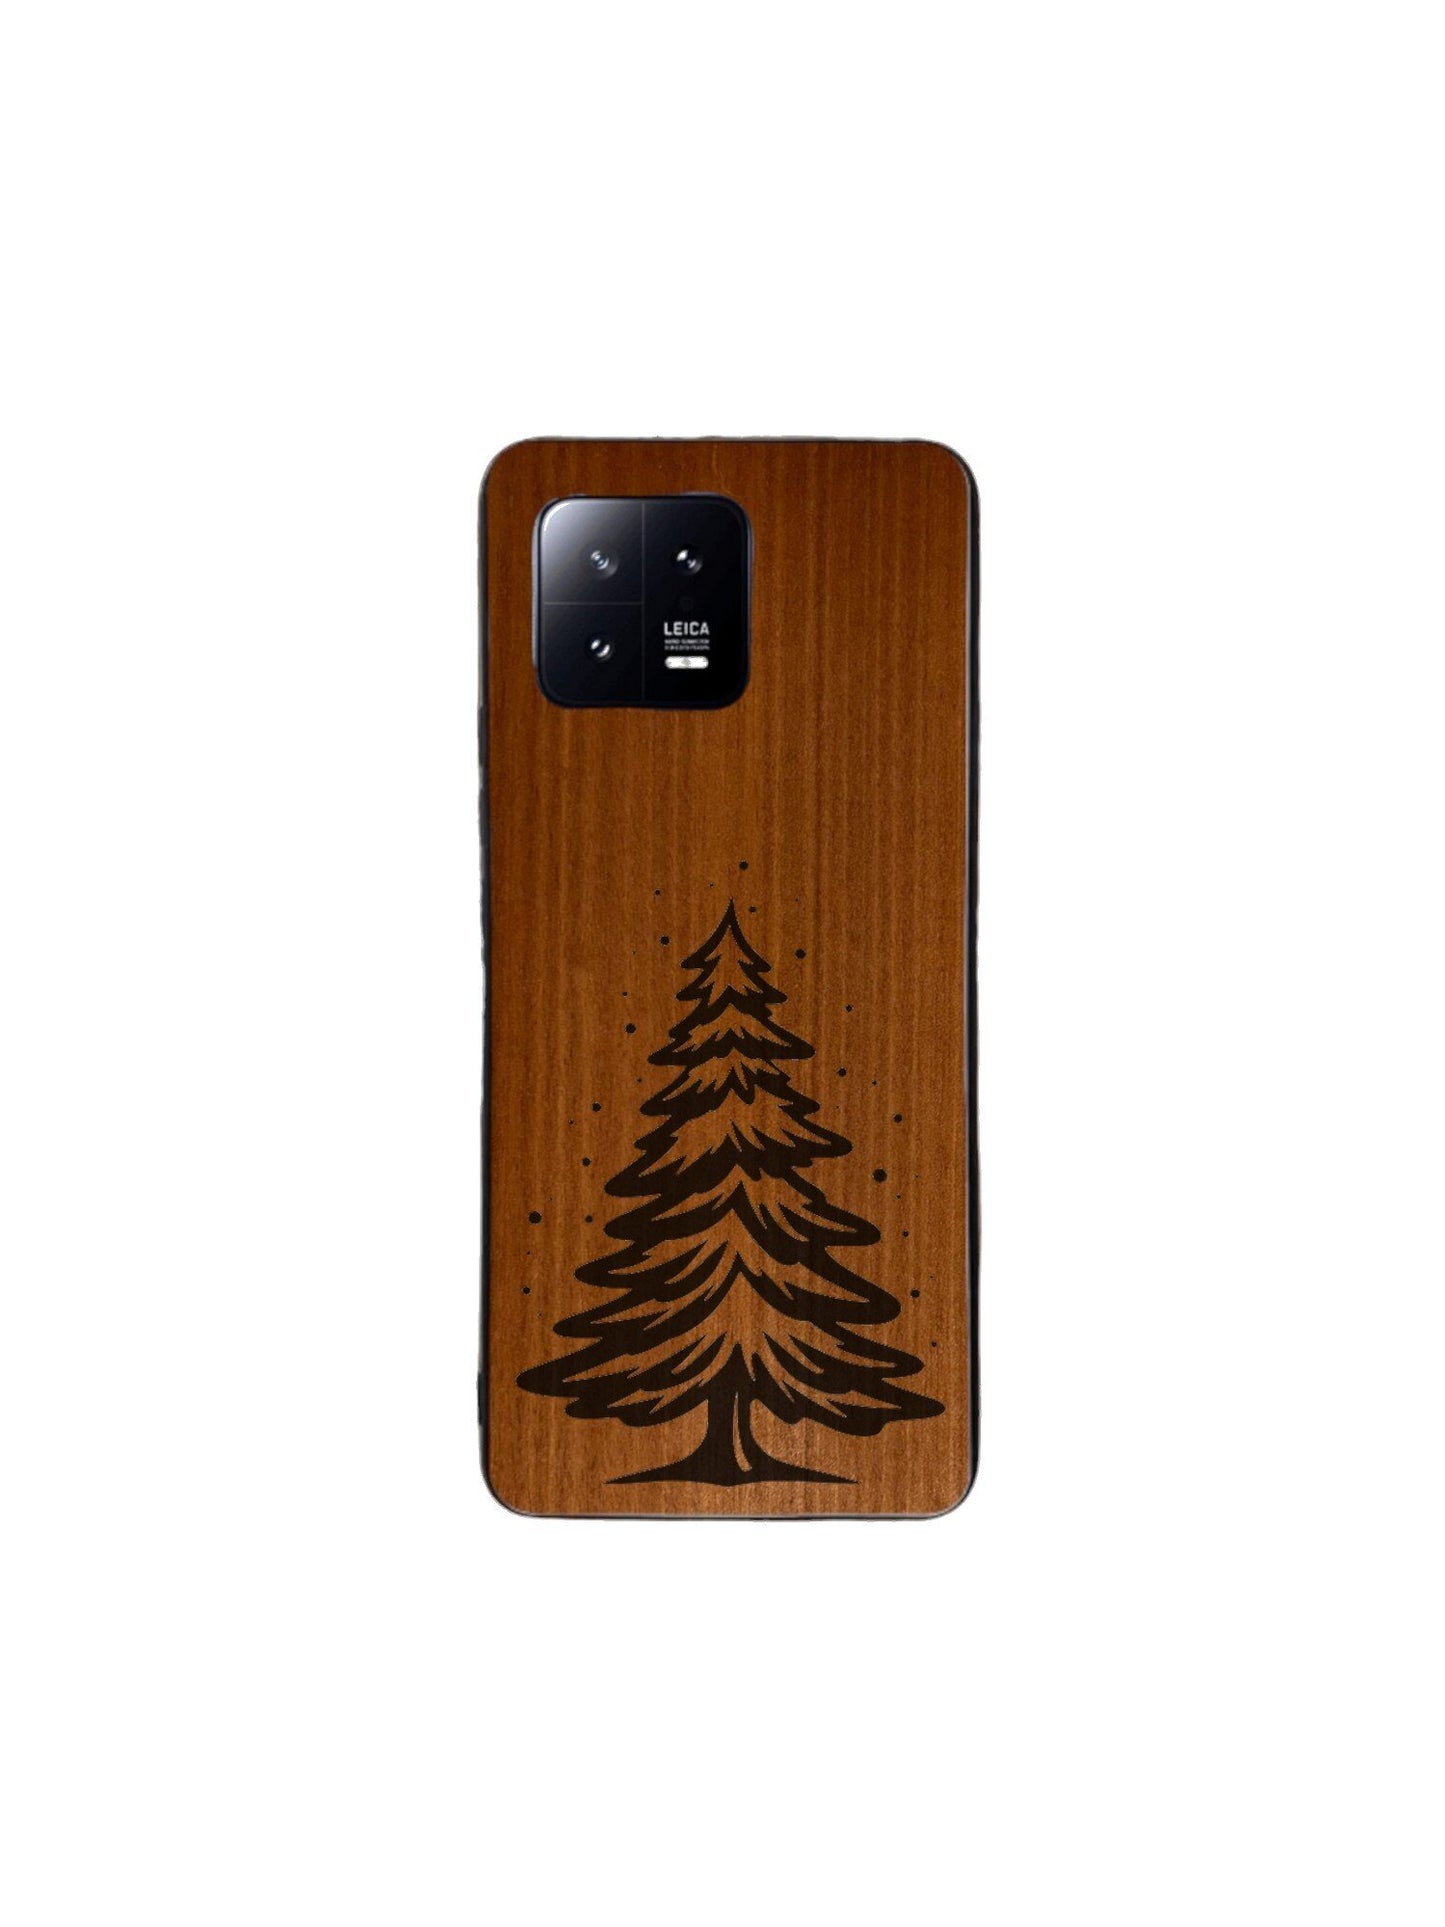 Xiaomi Mi Case - Christmas Tree